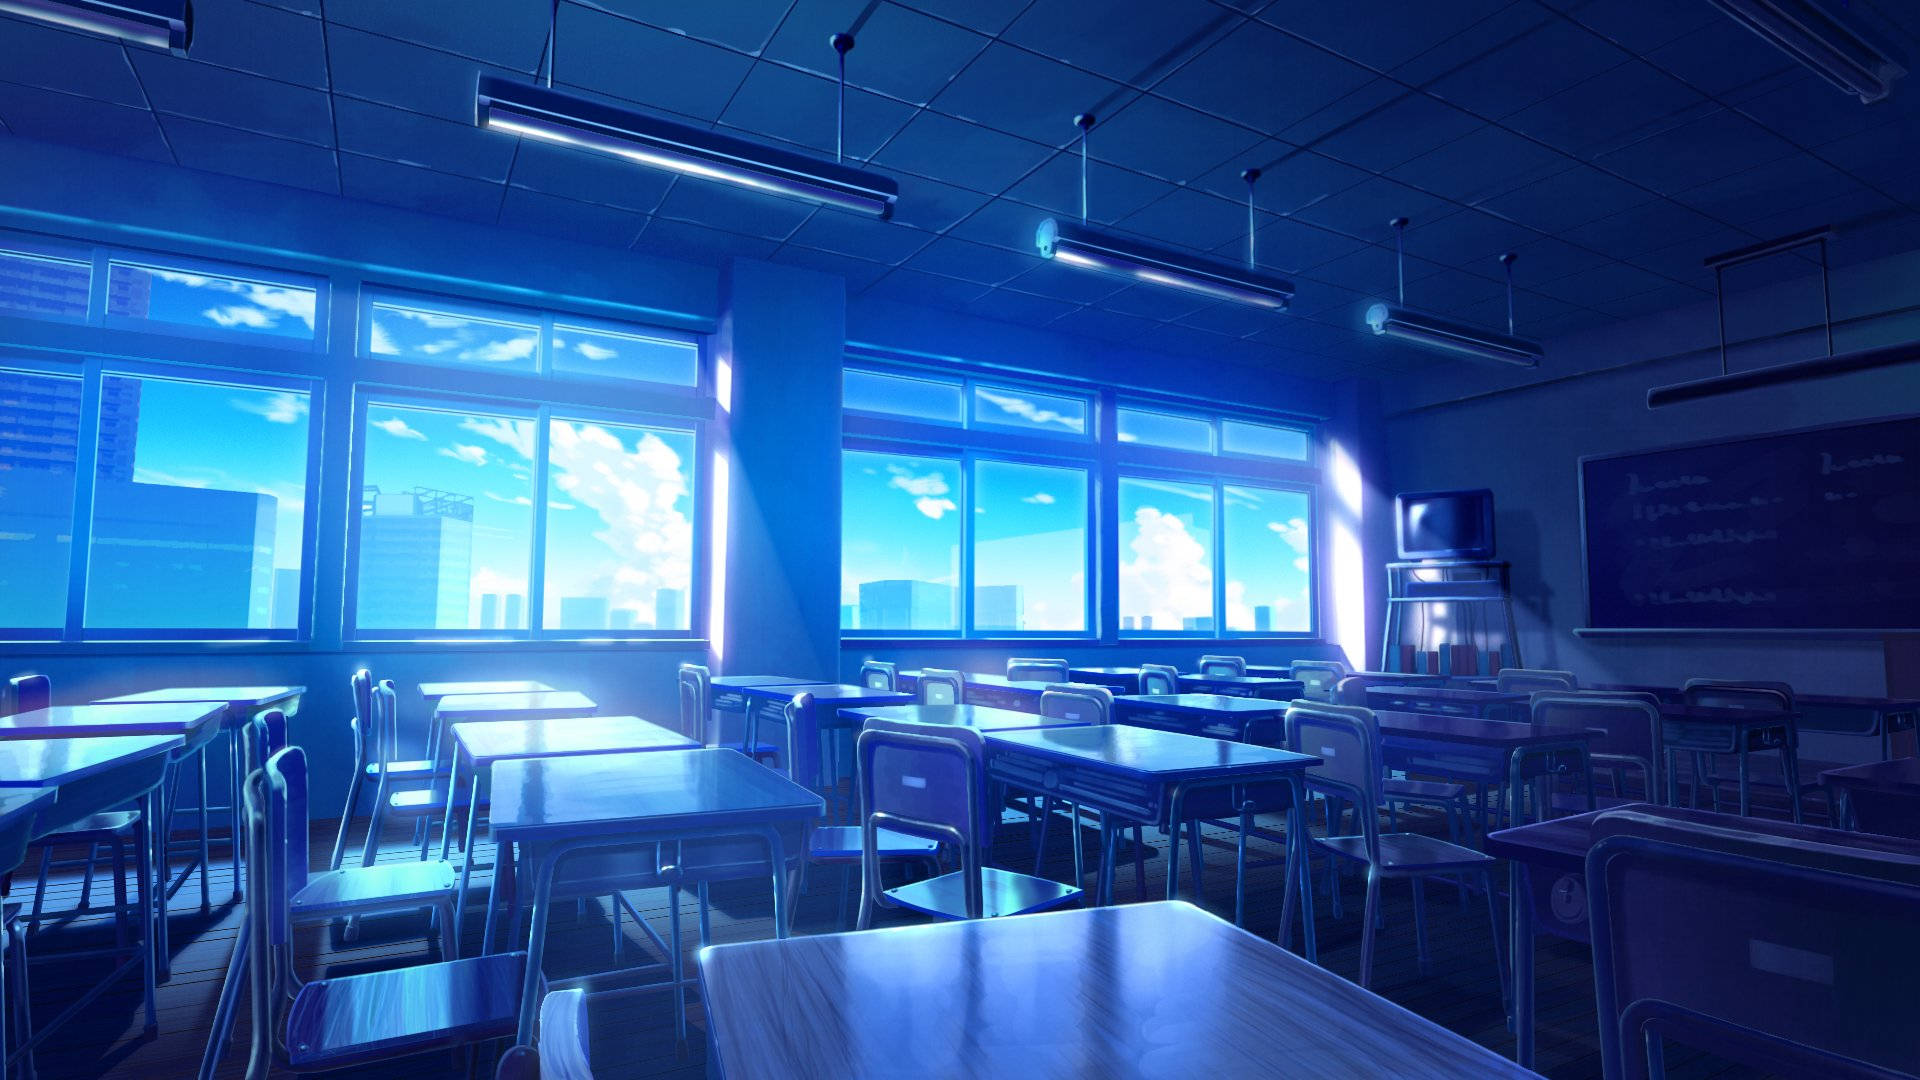 Iluminaciónazul En Un Aula De Anime Fondo de pantalla